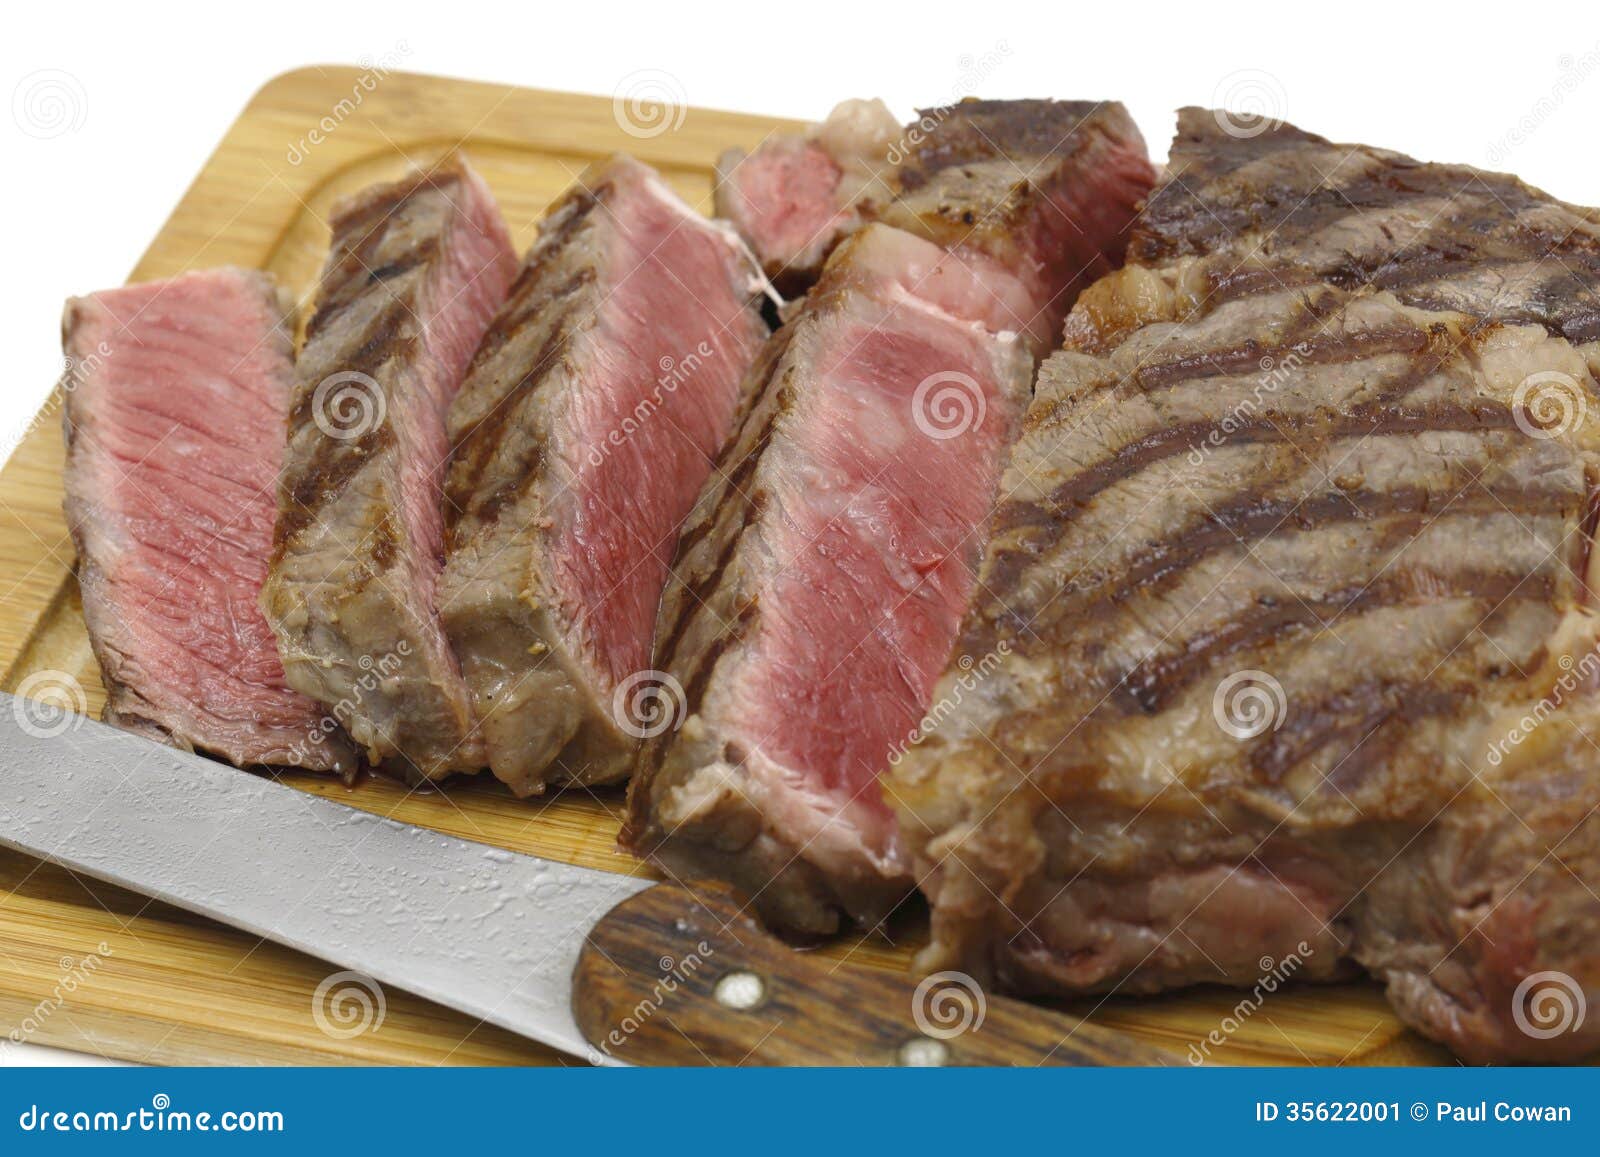 sliced wagyu steak